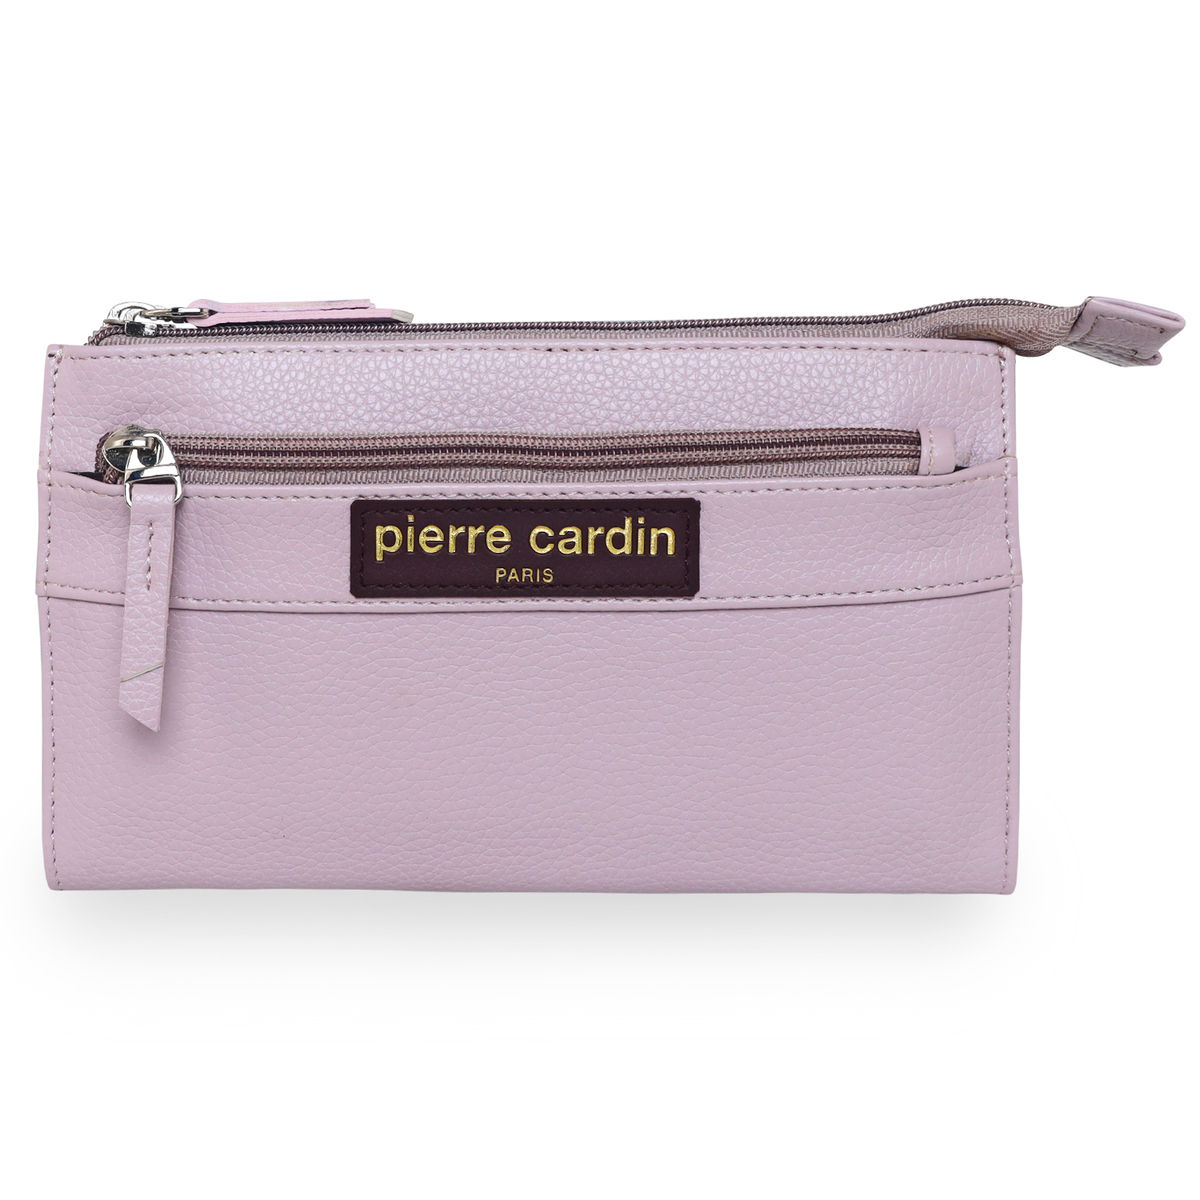 Pierre Cardin Bags Pink Women's Wallet